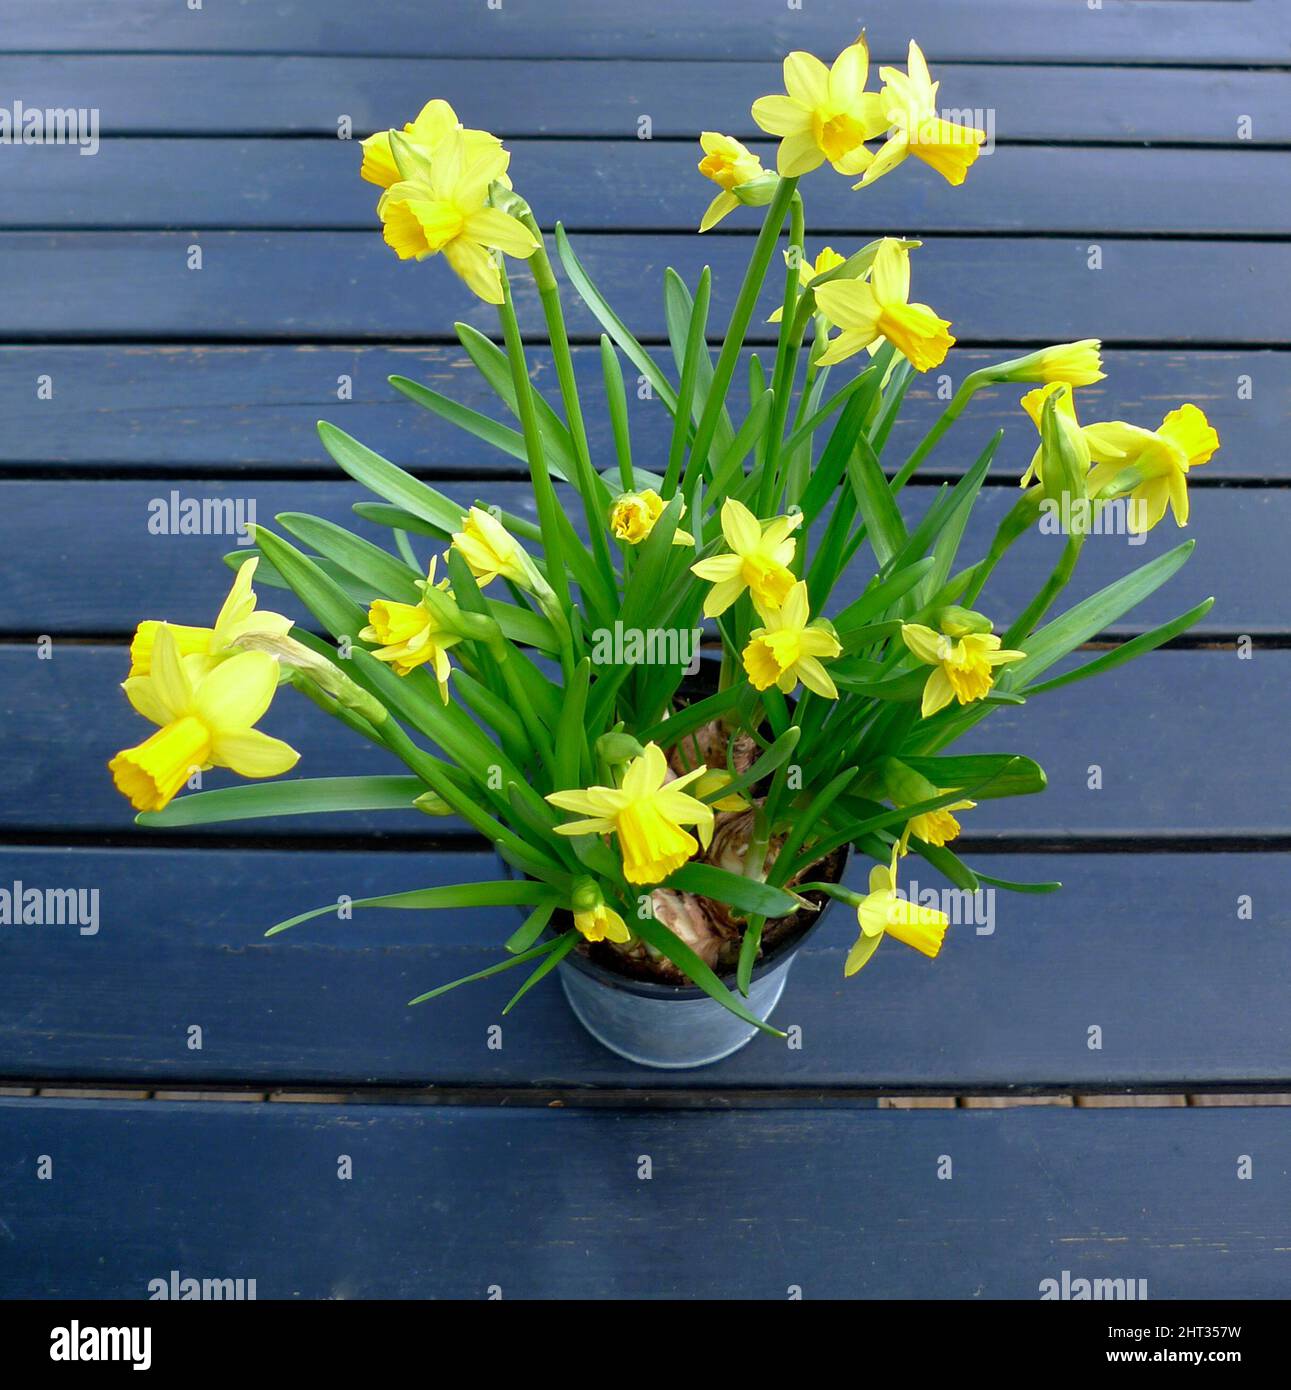 Jonquille de Pâques dans un pot Photo Stock - Alamy